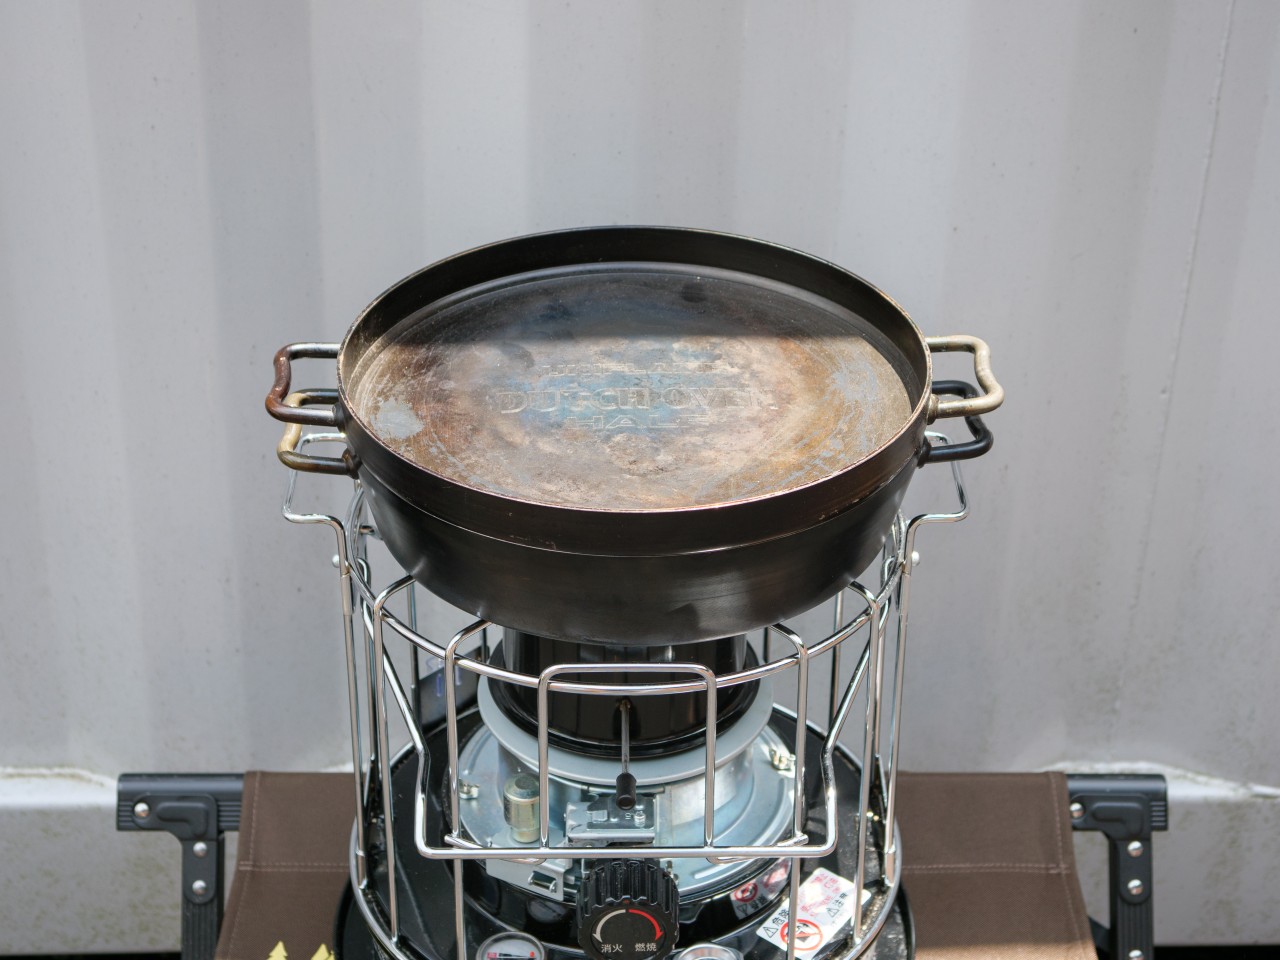 石油コンロ「タクード」を煮炊きや暖房に使ってわかったメリデメ